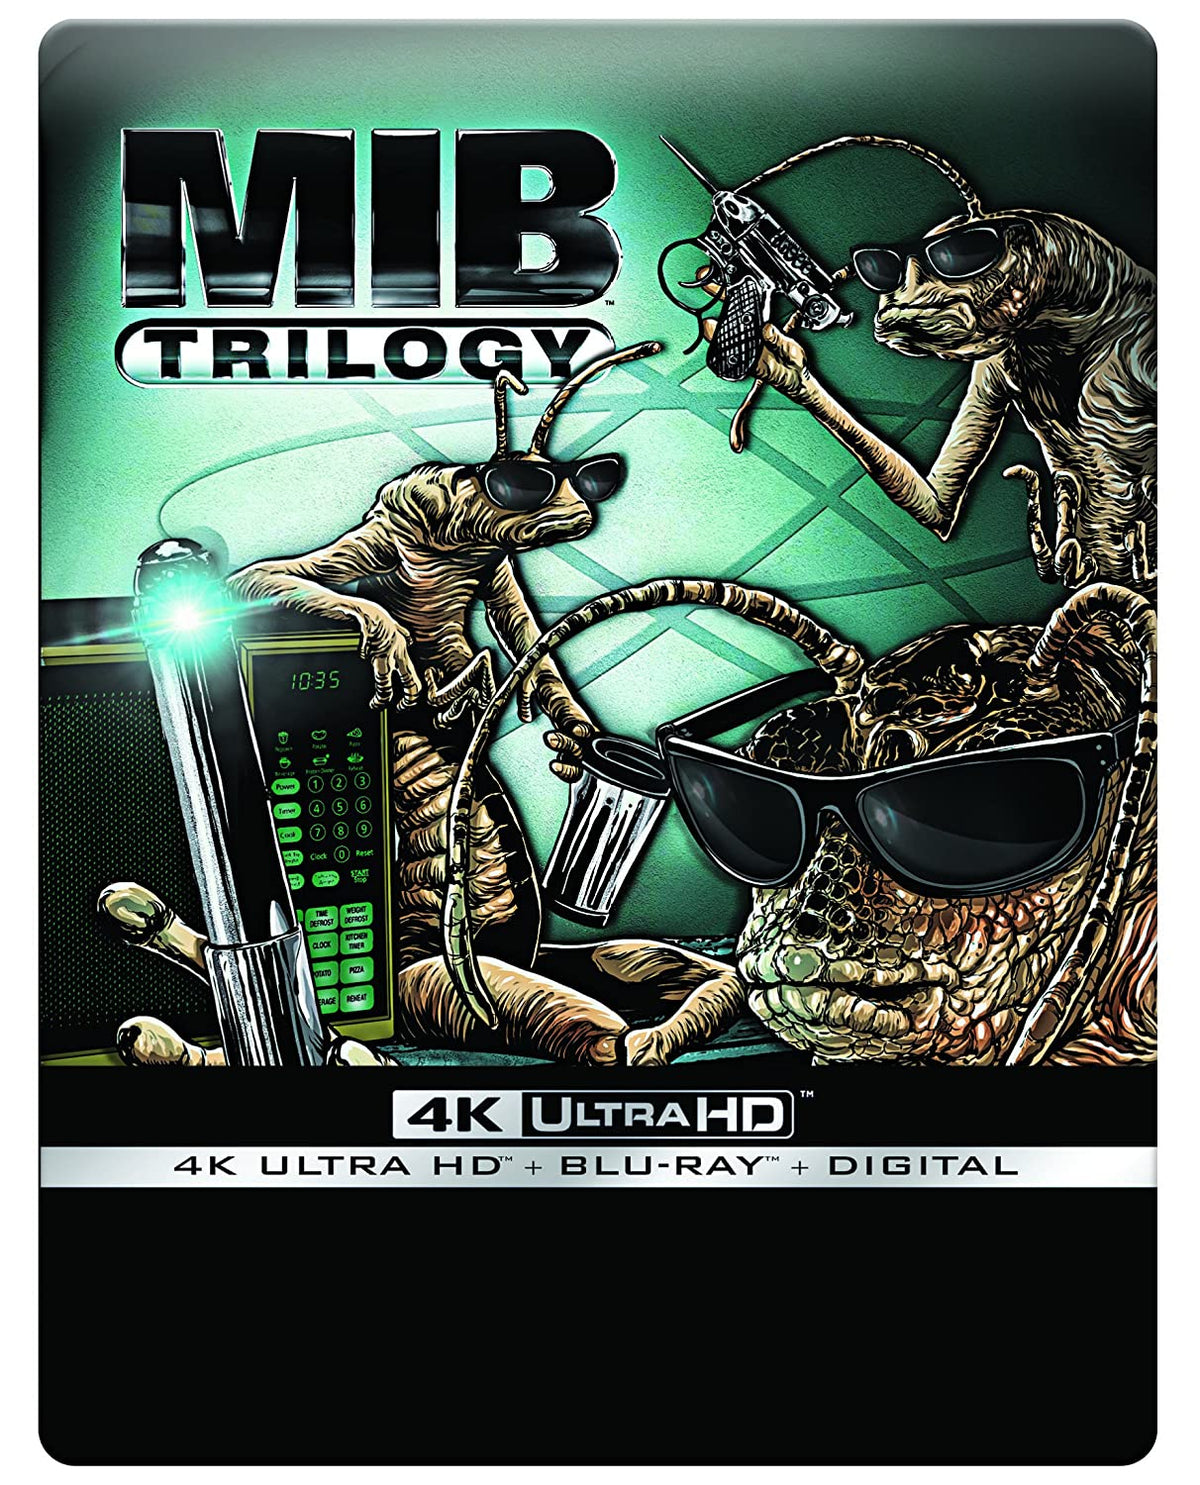 Men In Black Trilogy 4K Ultra HD  Blu-Ray Digital